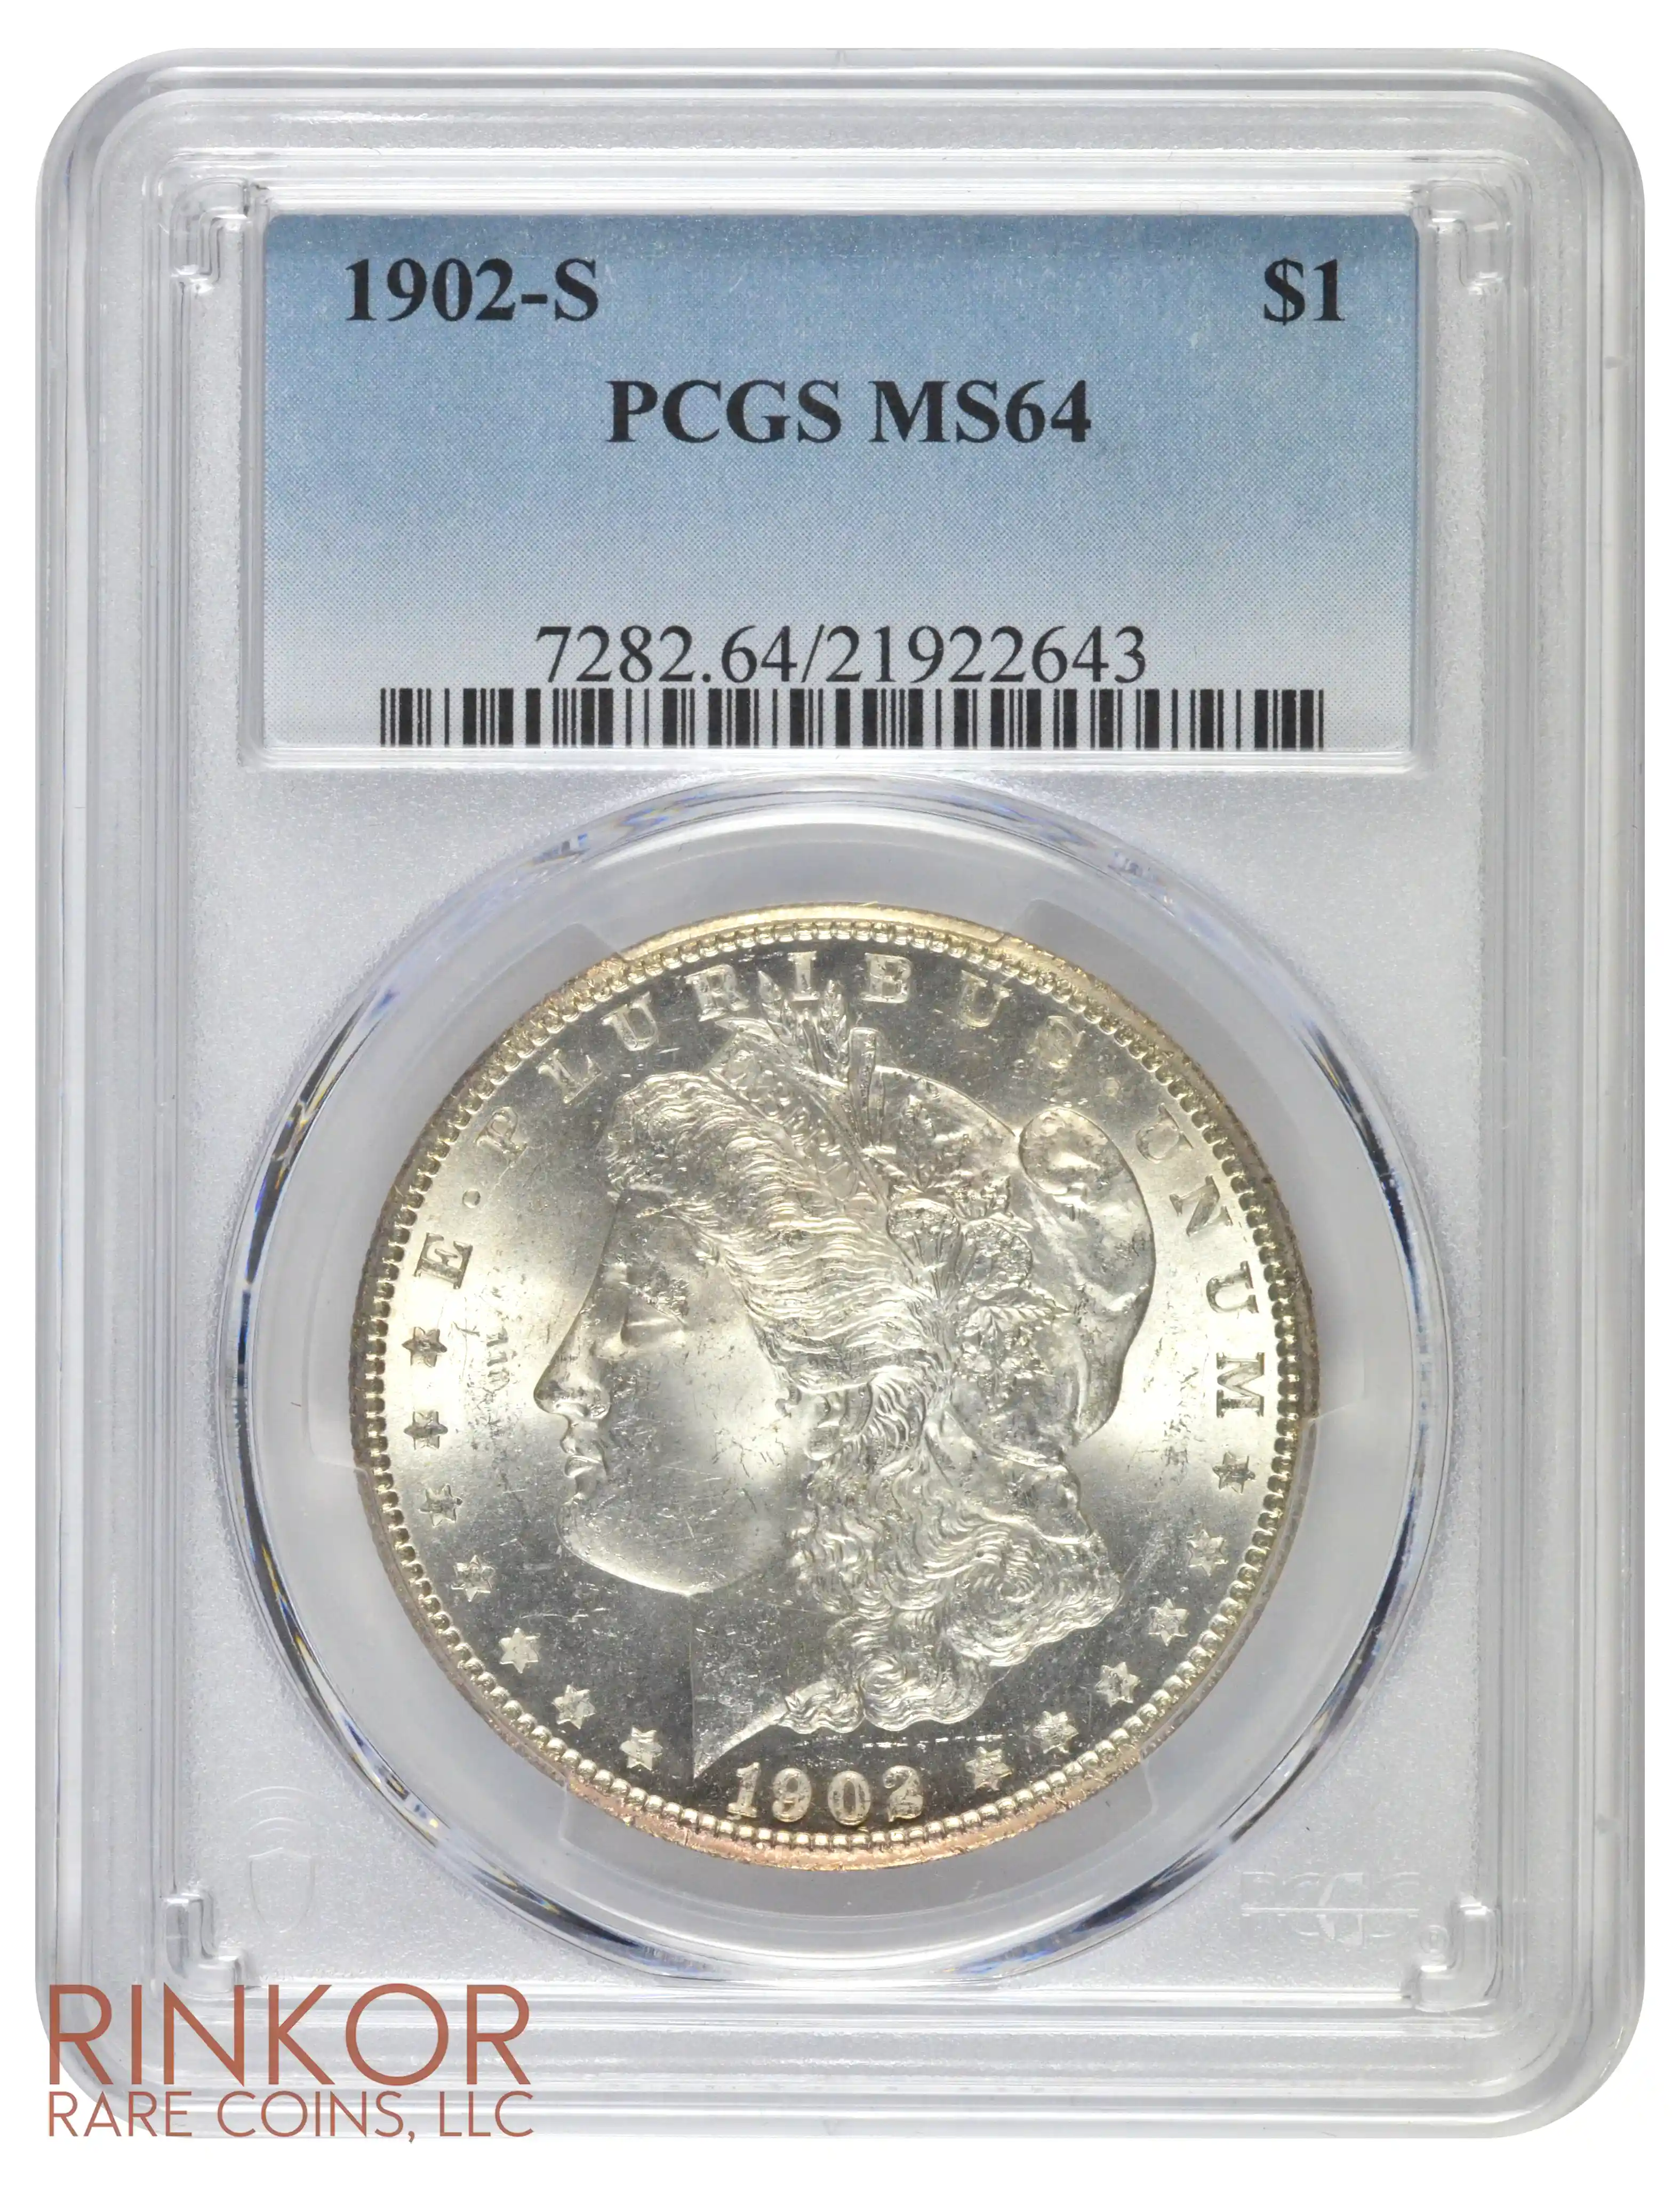 1902-S $1 PCGS MS 64